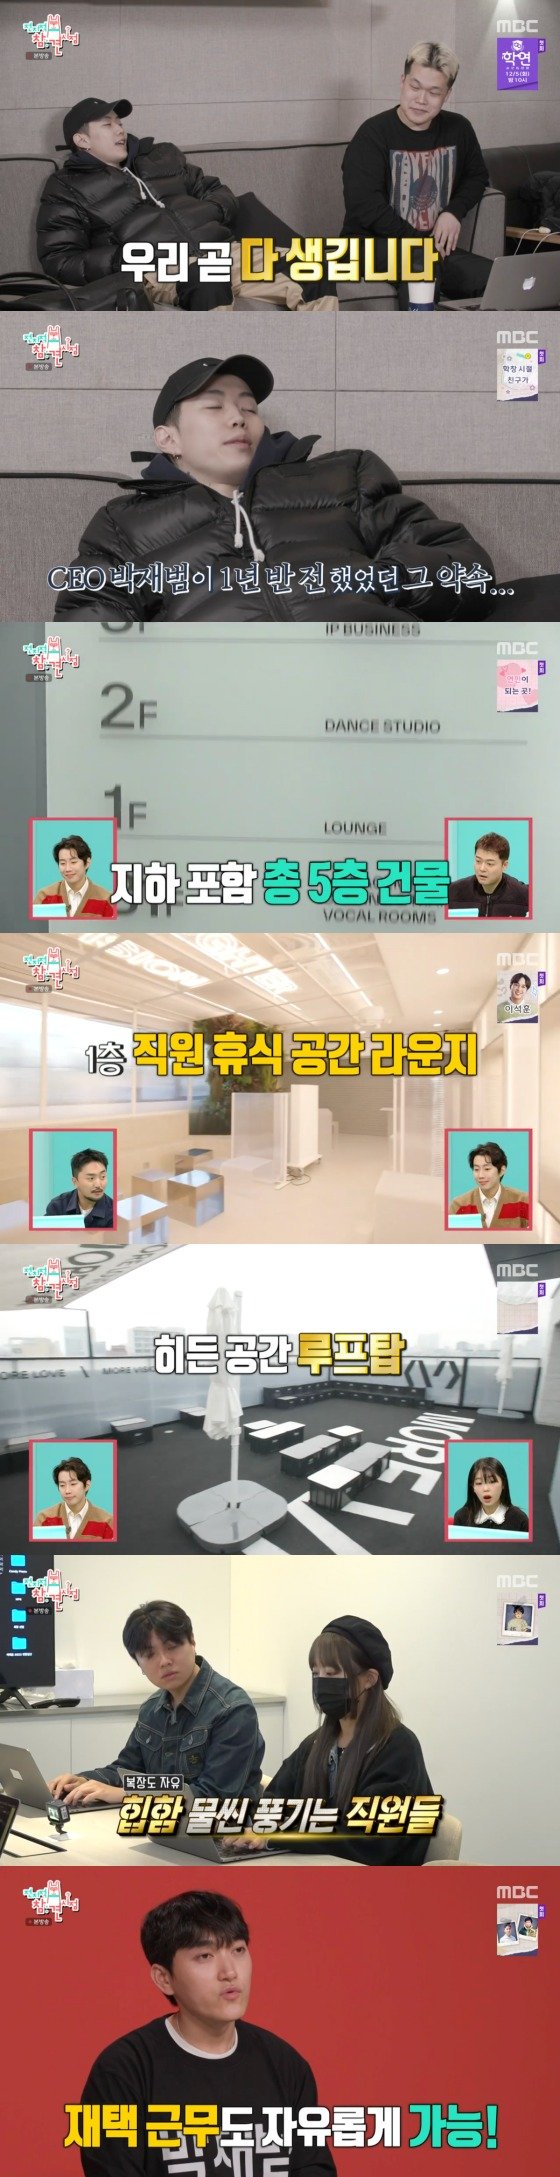 박재범, 방송 최초 모어비전 신사옥 공개…지하 포함 5층 건물 '으리으리'